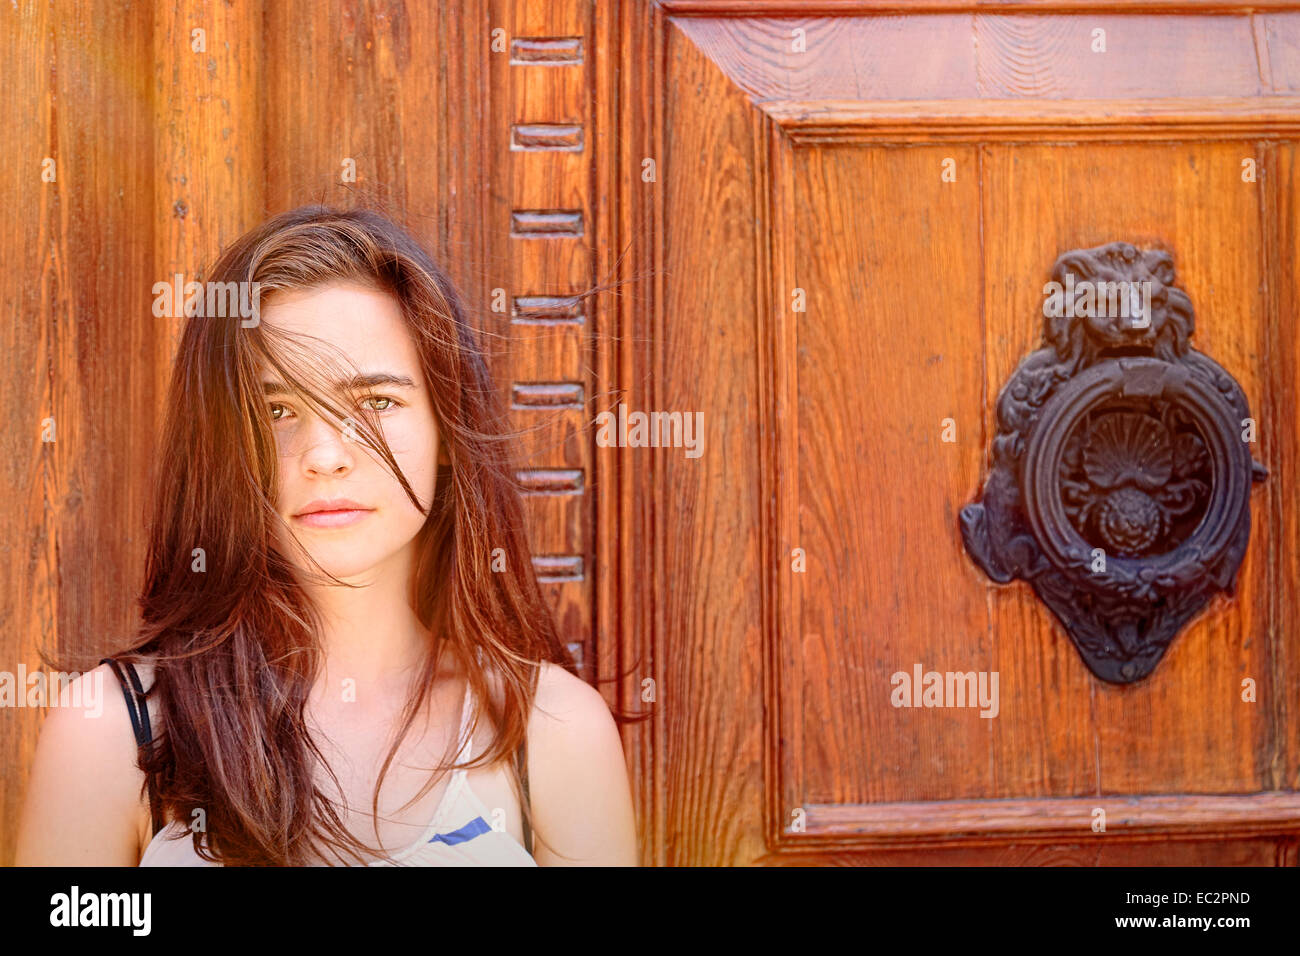 Porträt eines schönen Mädchens vor einer alten Holztür Stockfoto